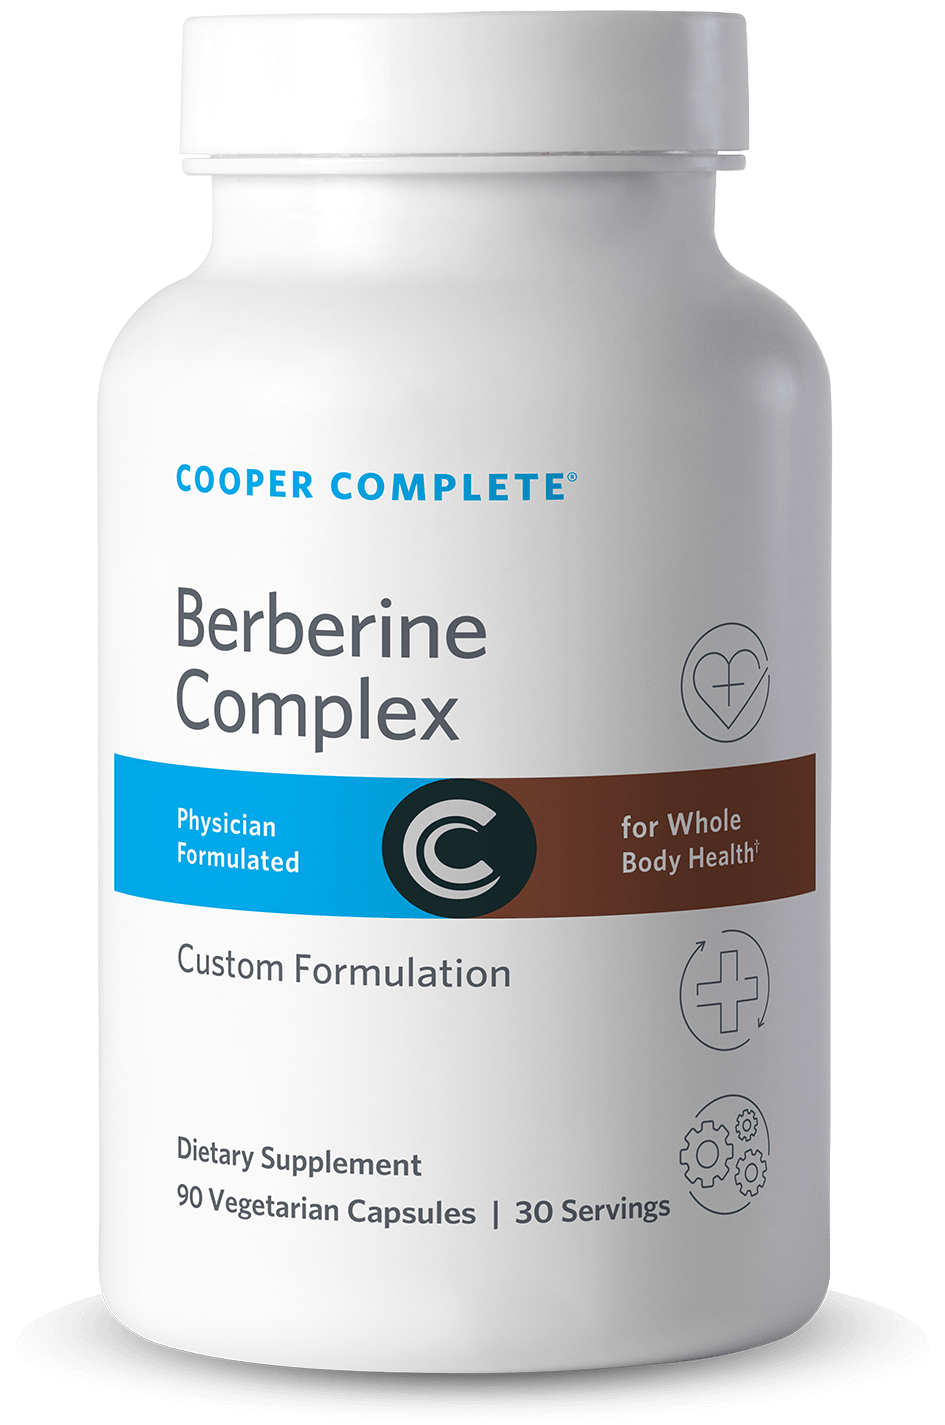 Photo of Cooper Complete Berberine Supplement bottle.